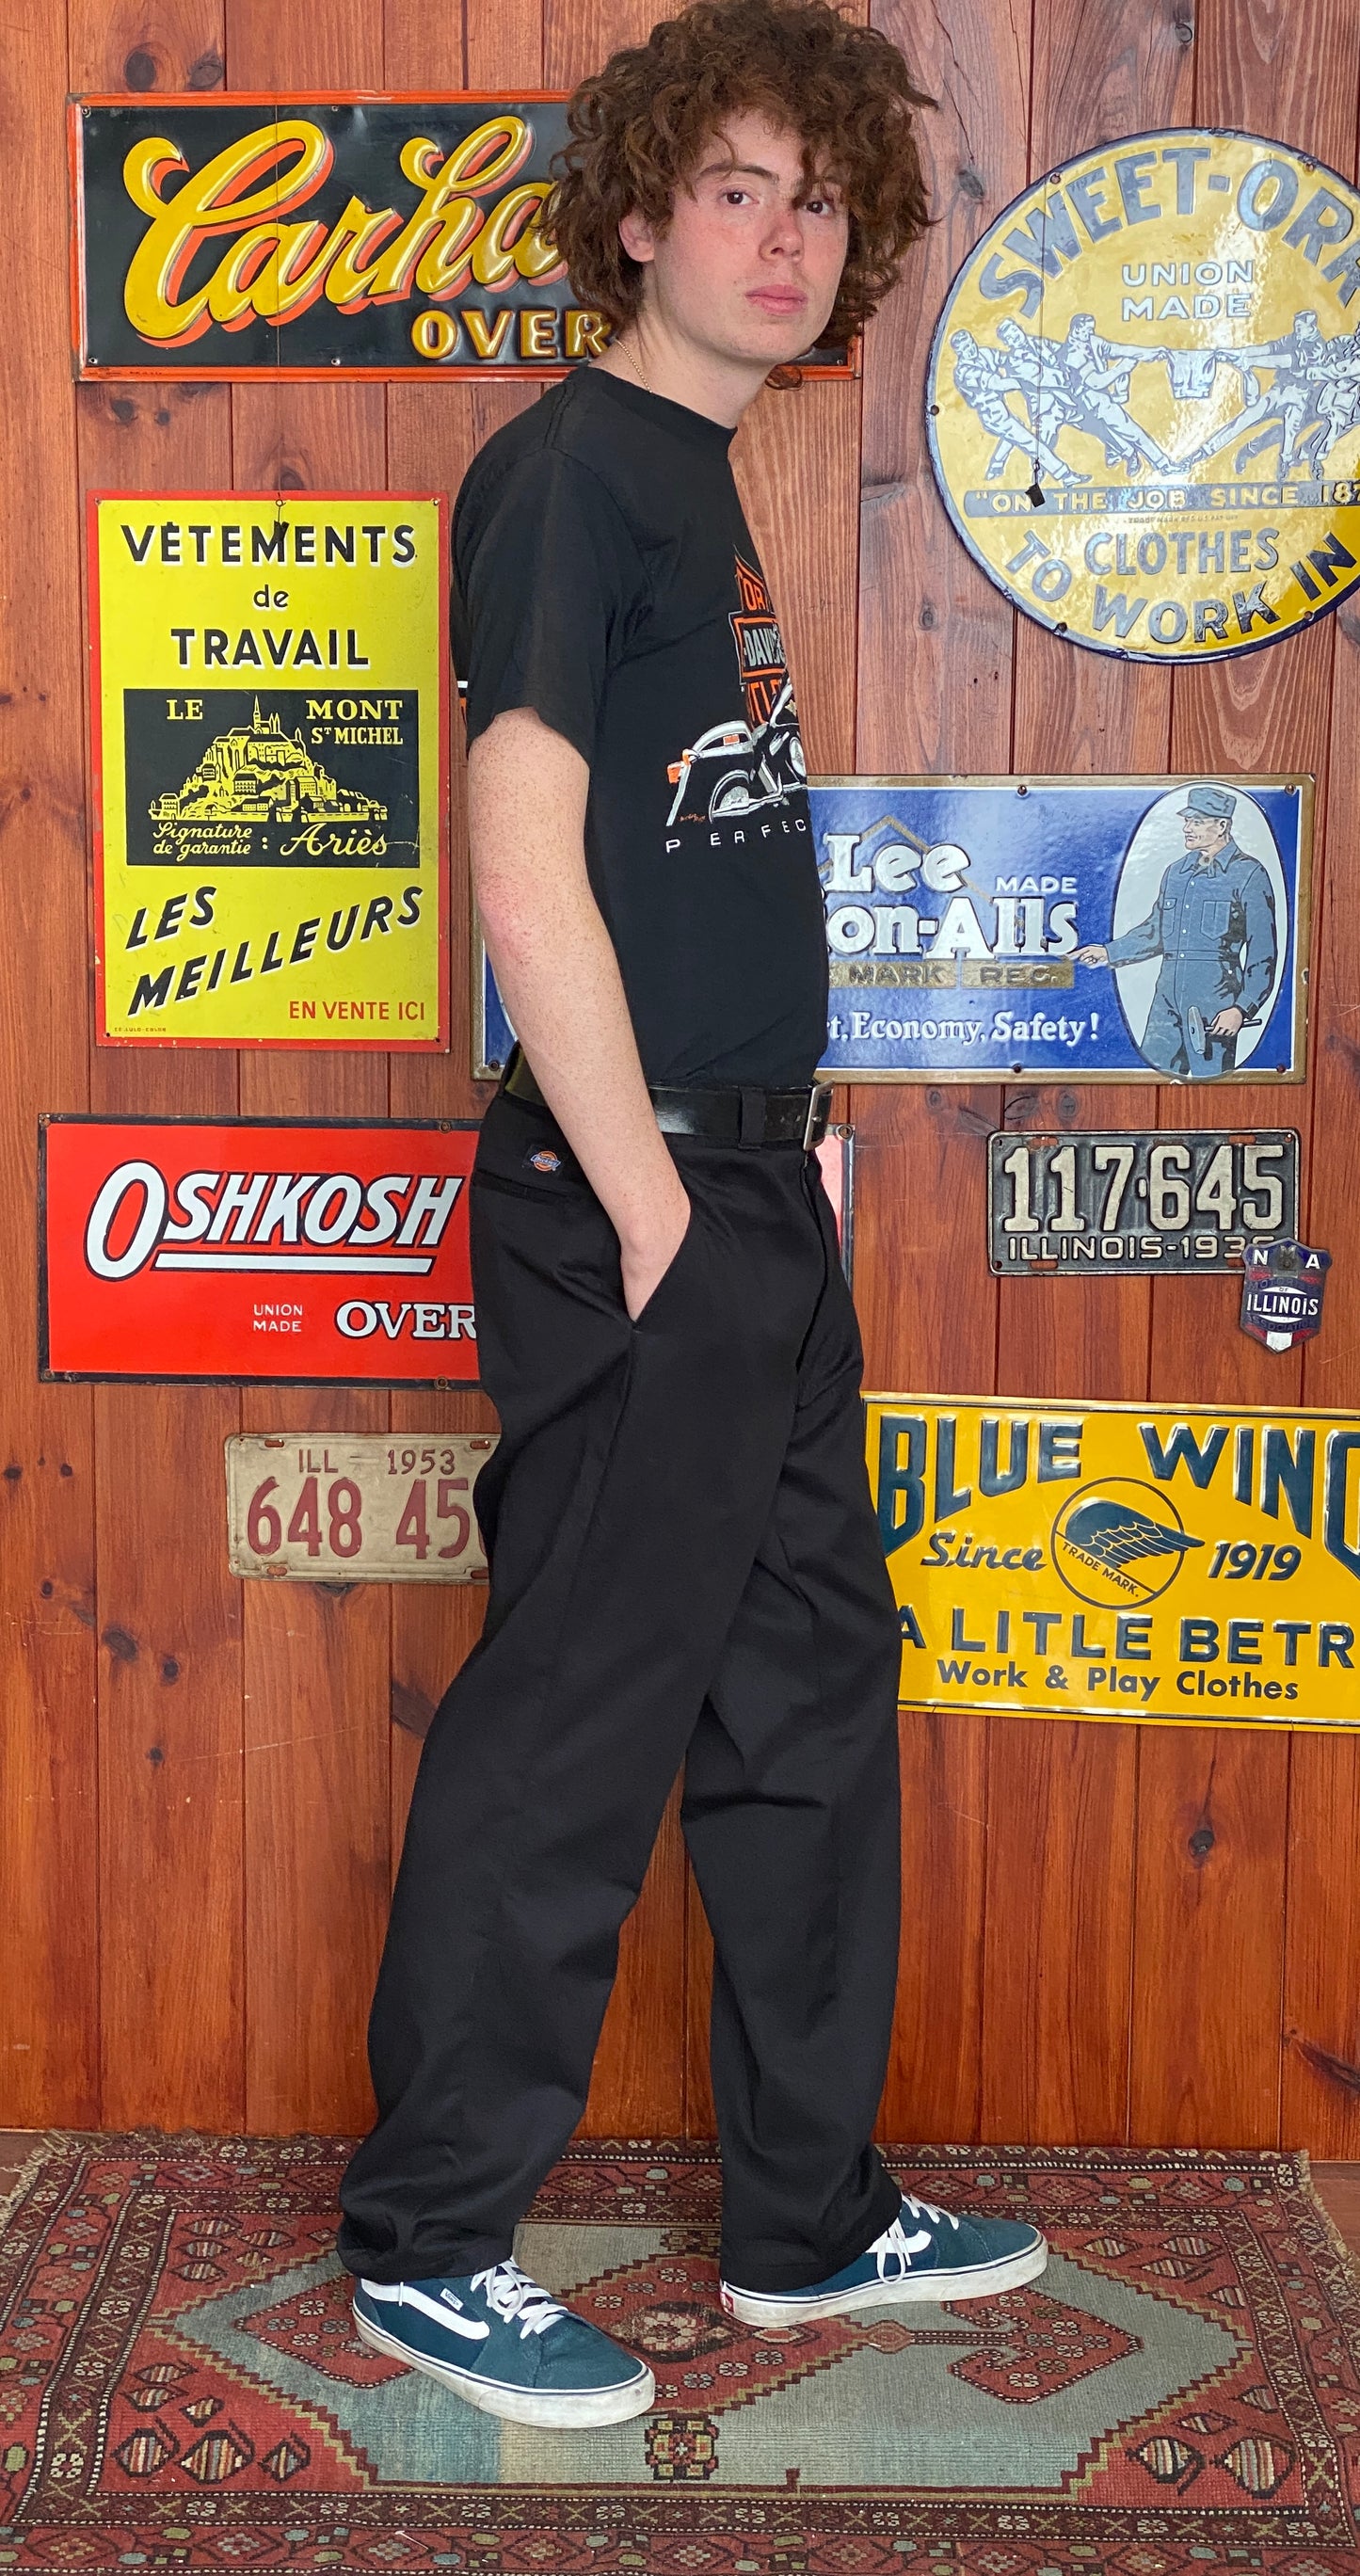 Black Vintage Dickies pants model 874 size 38X32